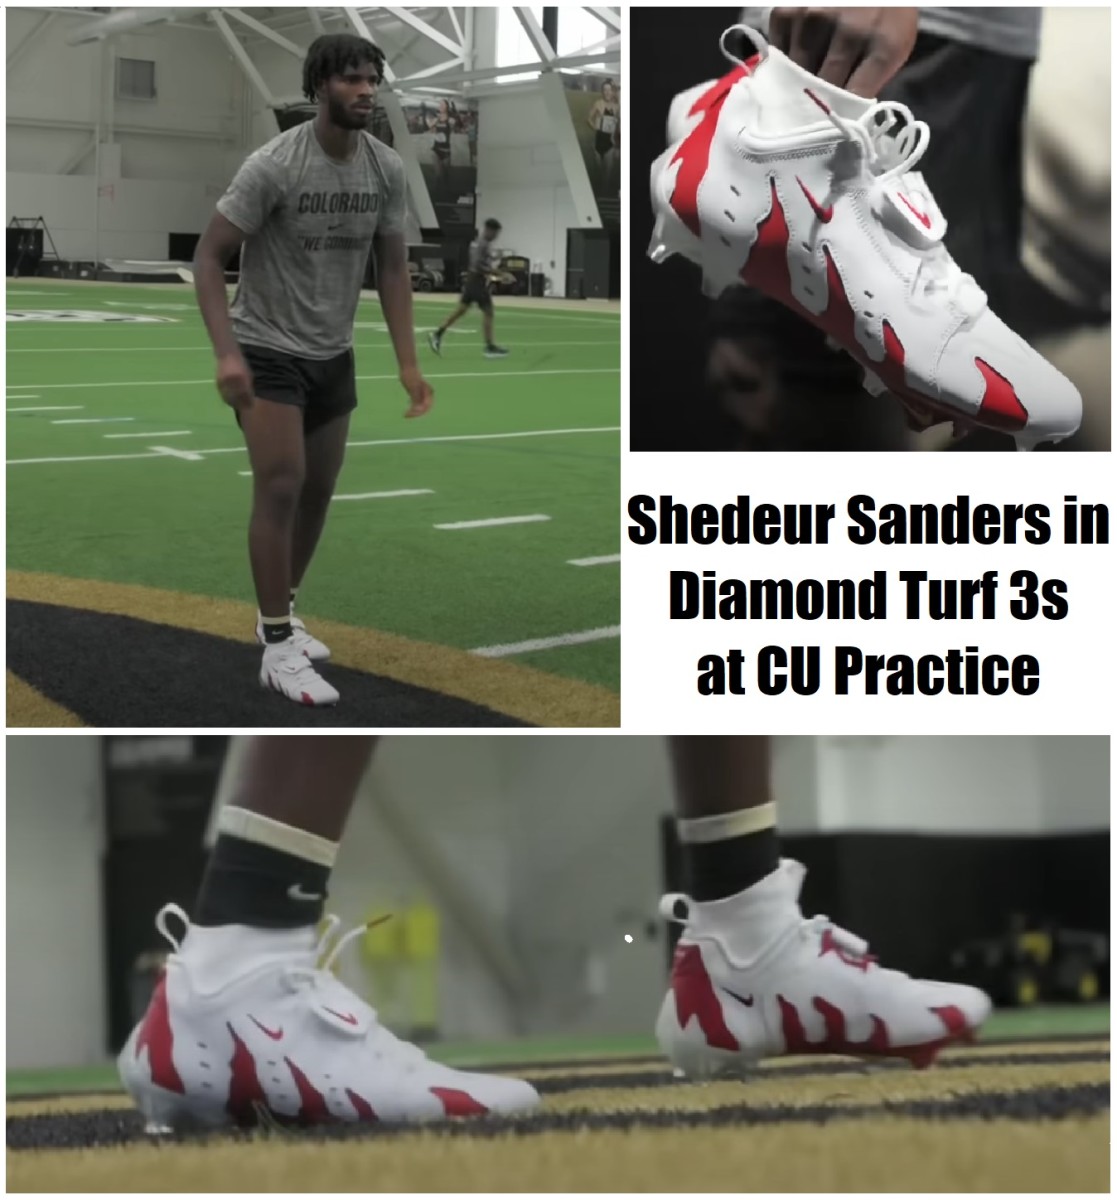 Colorado's Shedeur Sanders in practice with Nike Diamond Turf